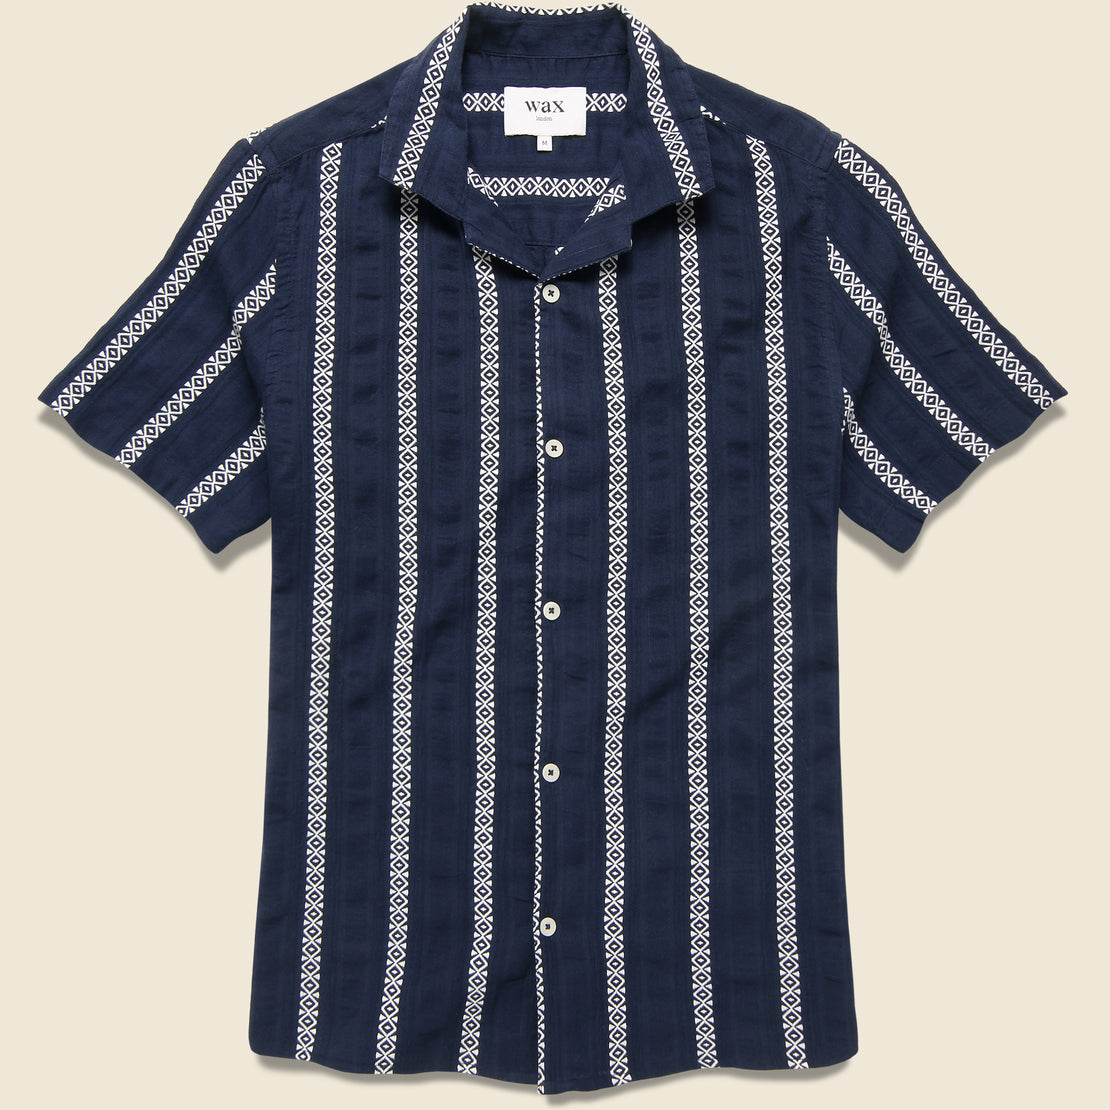 Wax London Leno Shirt - Navy